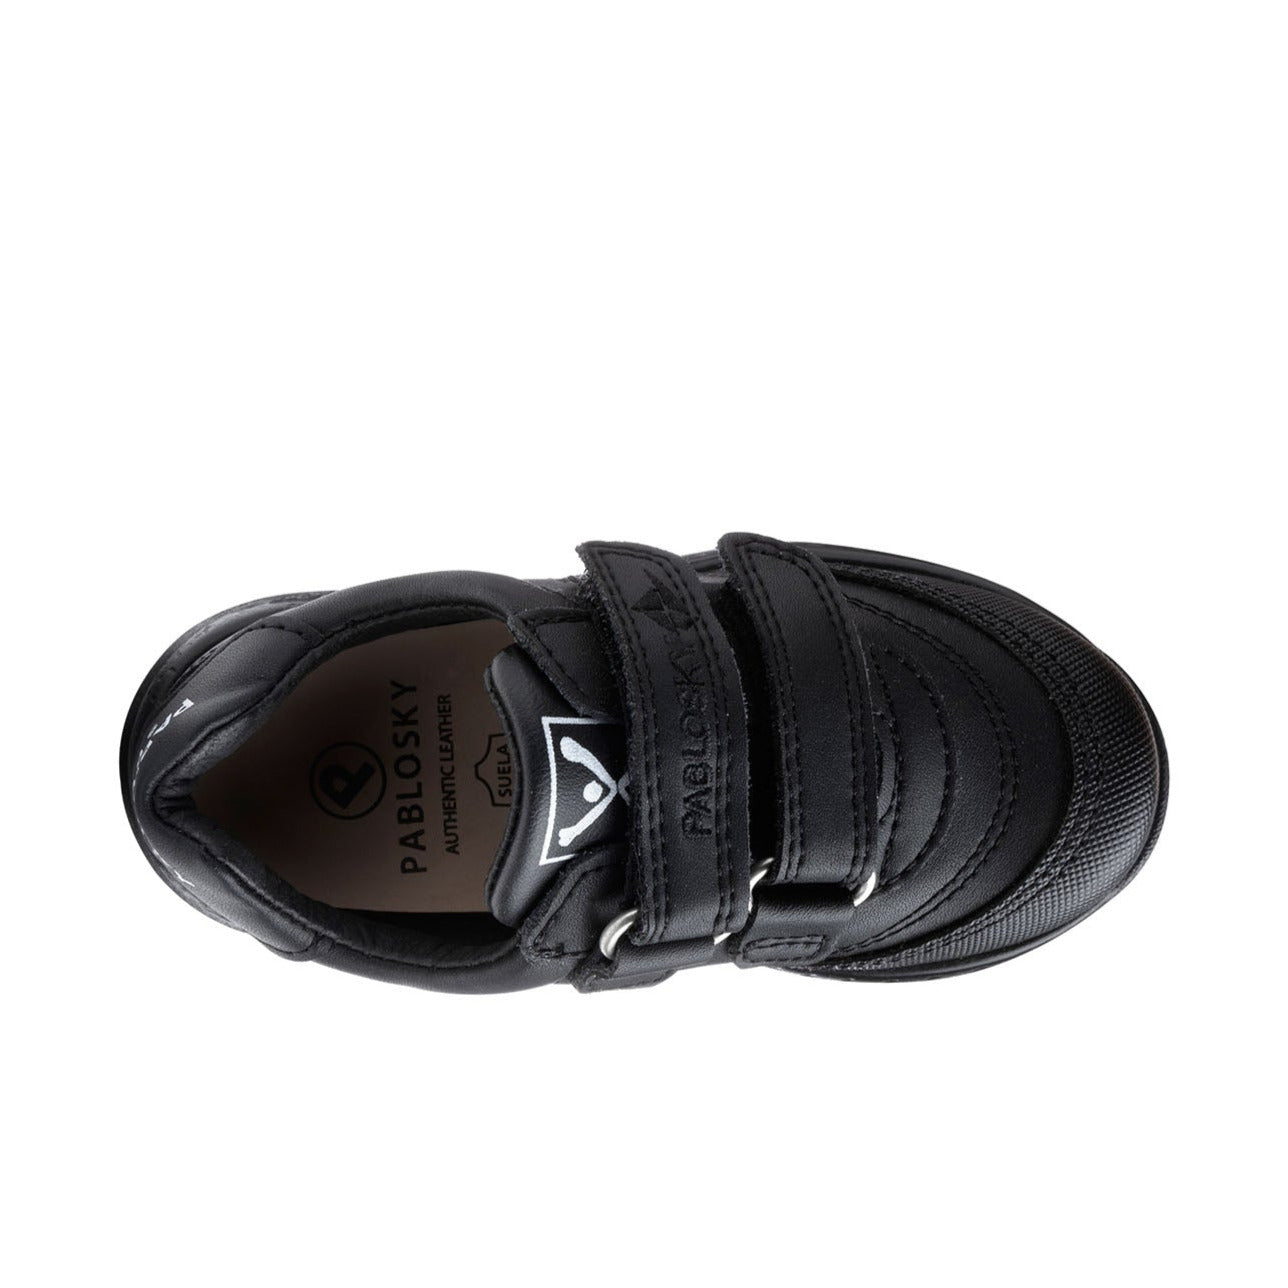 Pablosky Black School Shoes / 296910